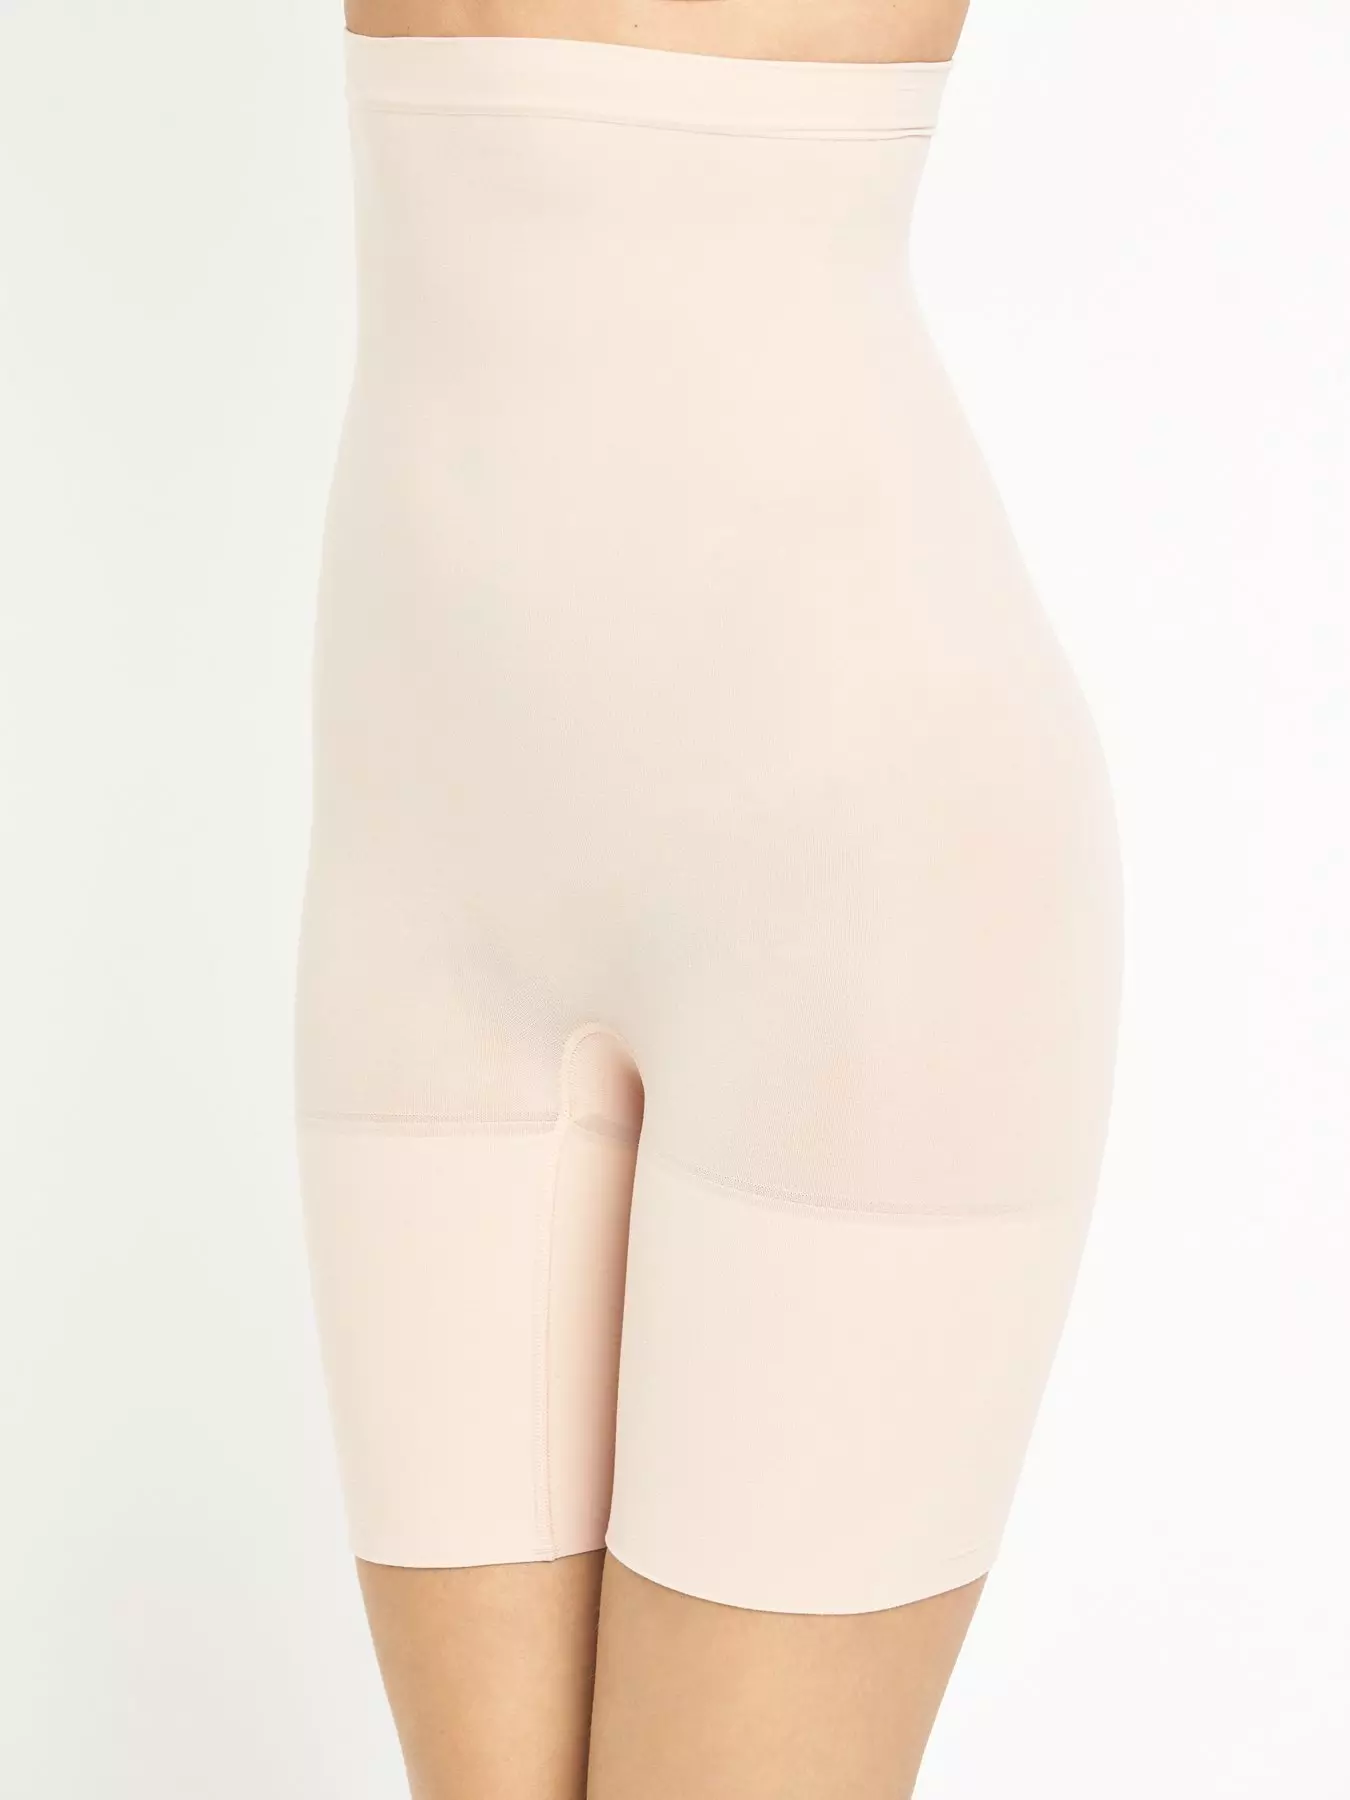 Elegant shapewear girdle with leg Relaxa Beige S-XL